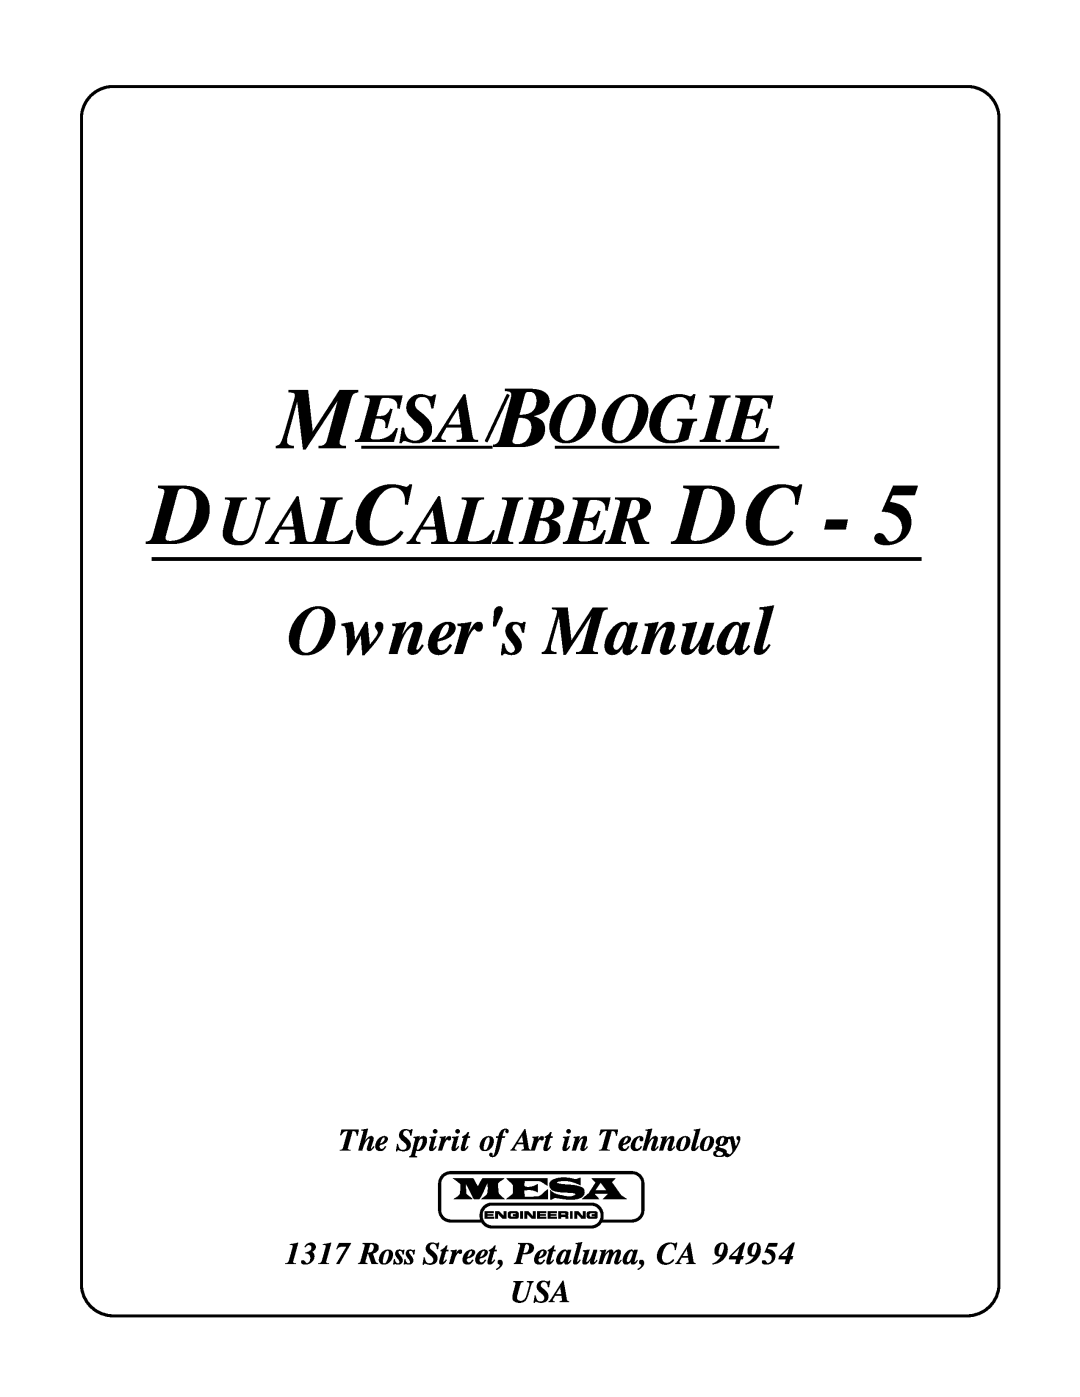 Mesa/Boogie DC5 manual The Spirit of Art in Technology, Ross Street, Petaluma, CA USA 